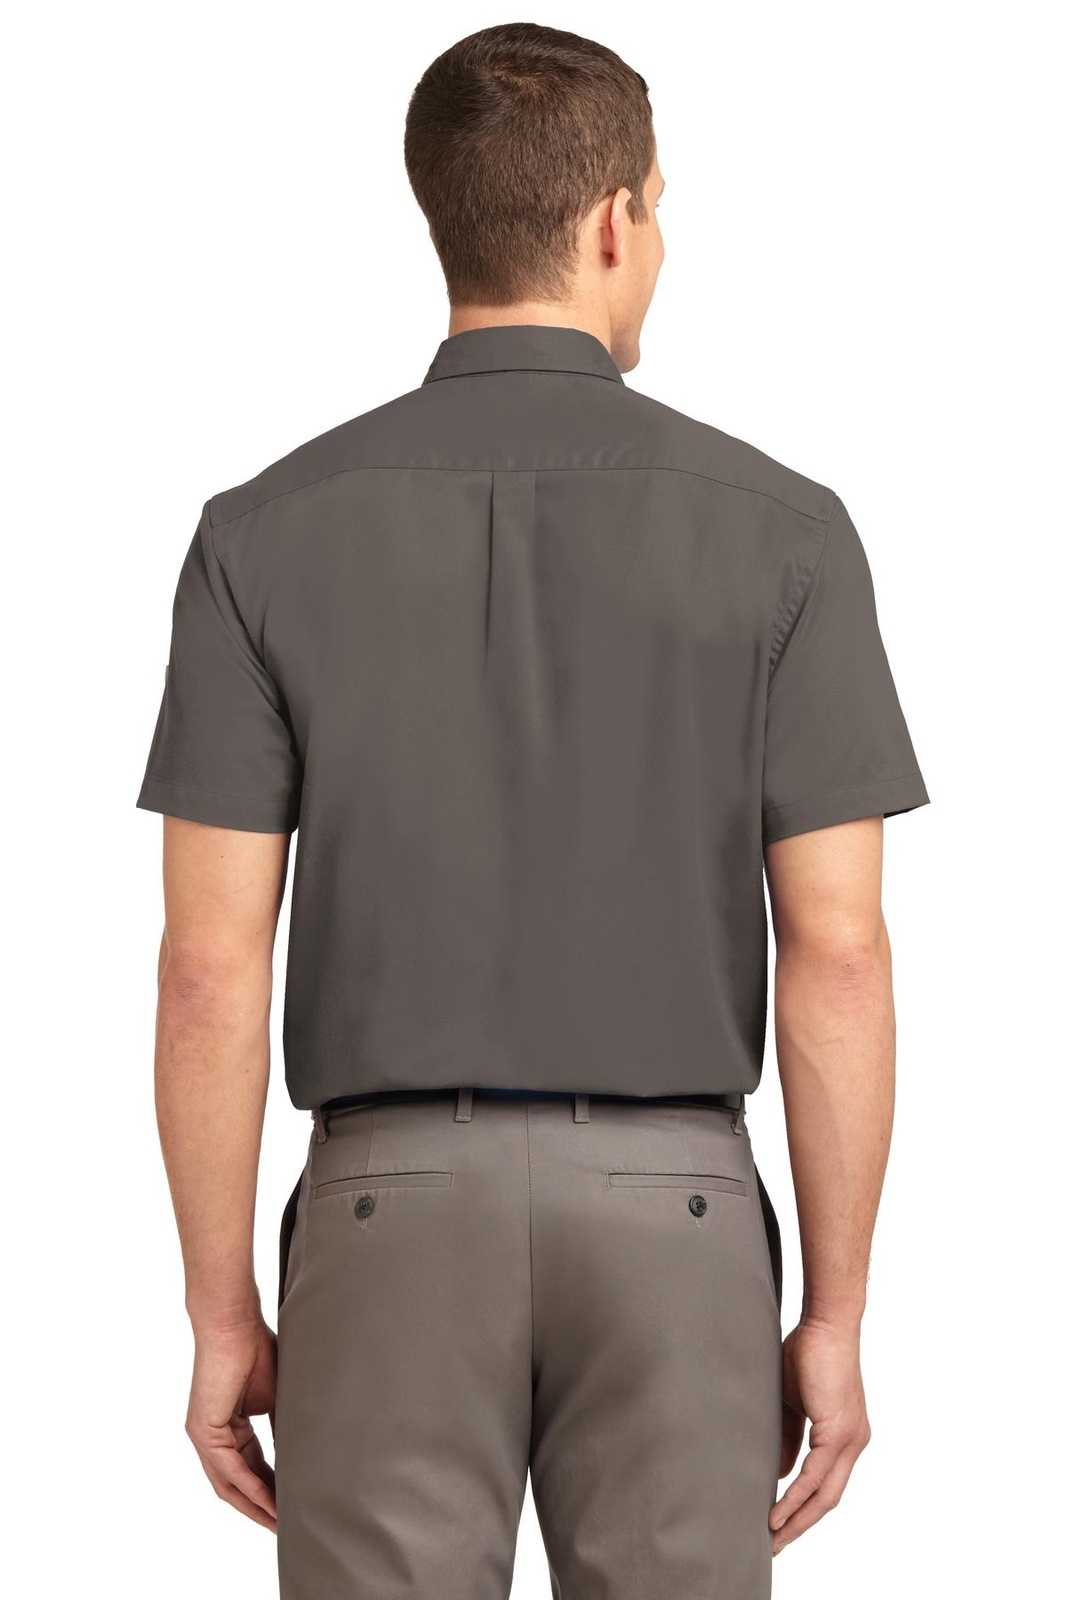 Port Authority S508 Short Sleeve Easy Care Shirt - Bark - HIT a Double - 1